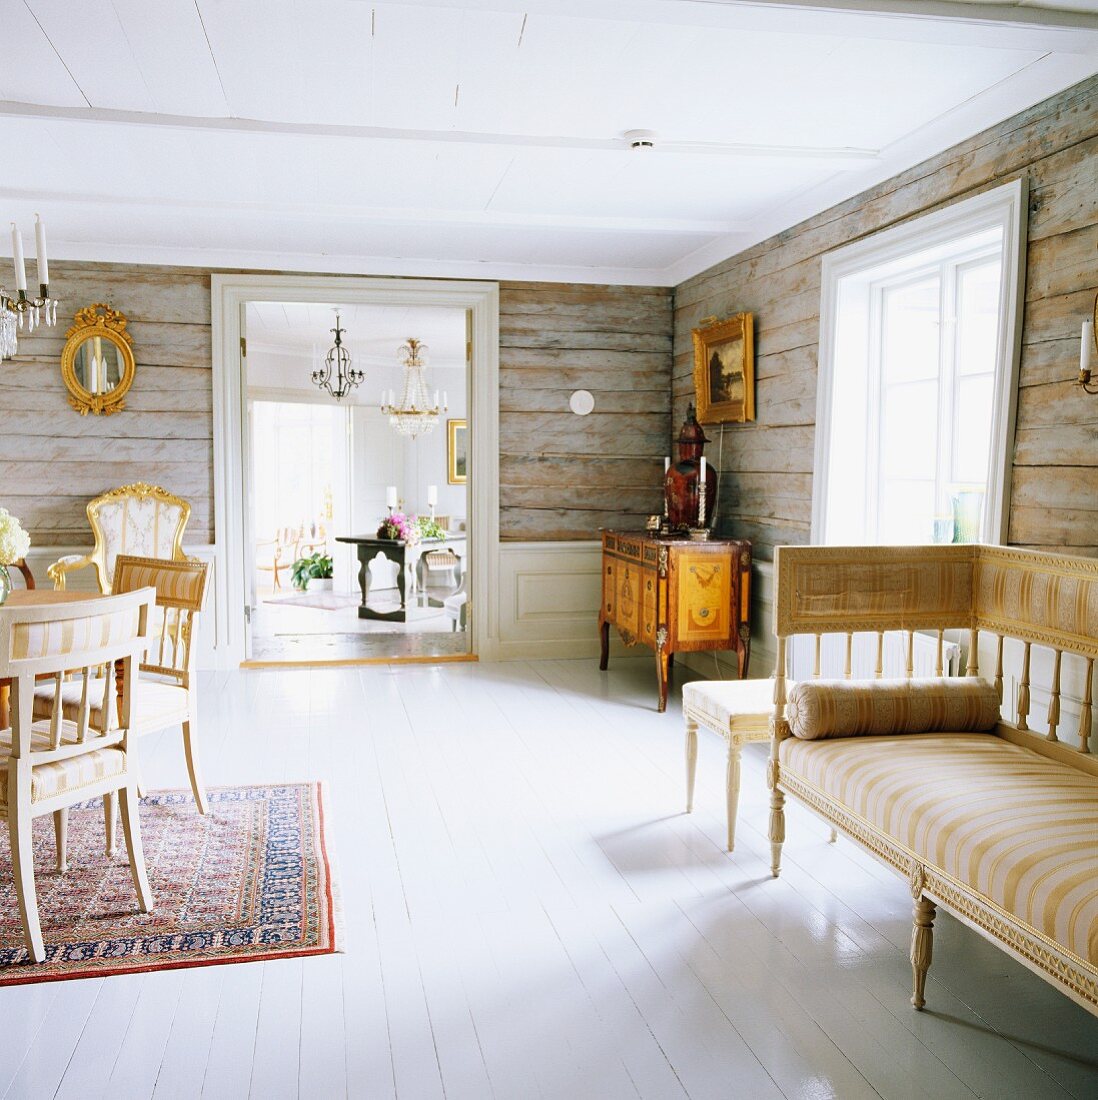 Zimmerflucht in altem, schwedischem Holzhaus mit original rustikalen Holzwänden und antiker Wohnraummöblierung